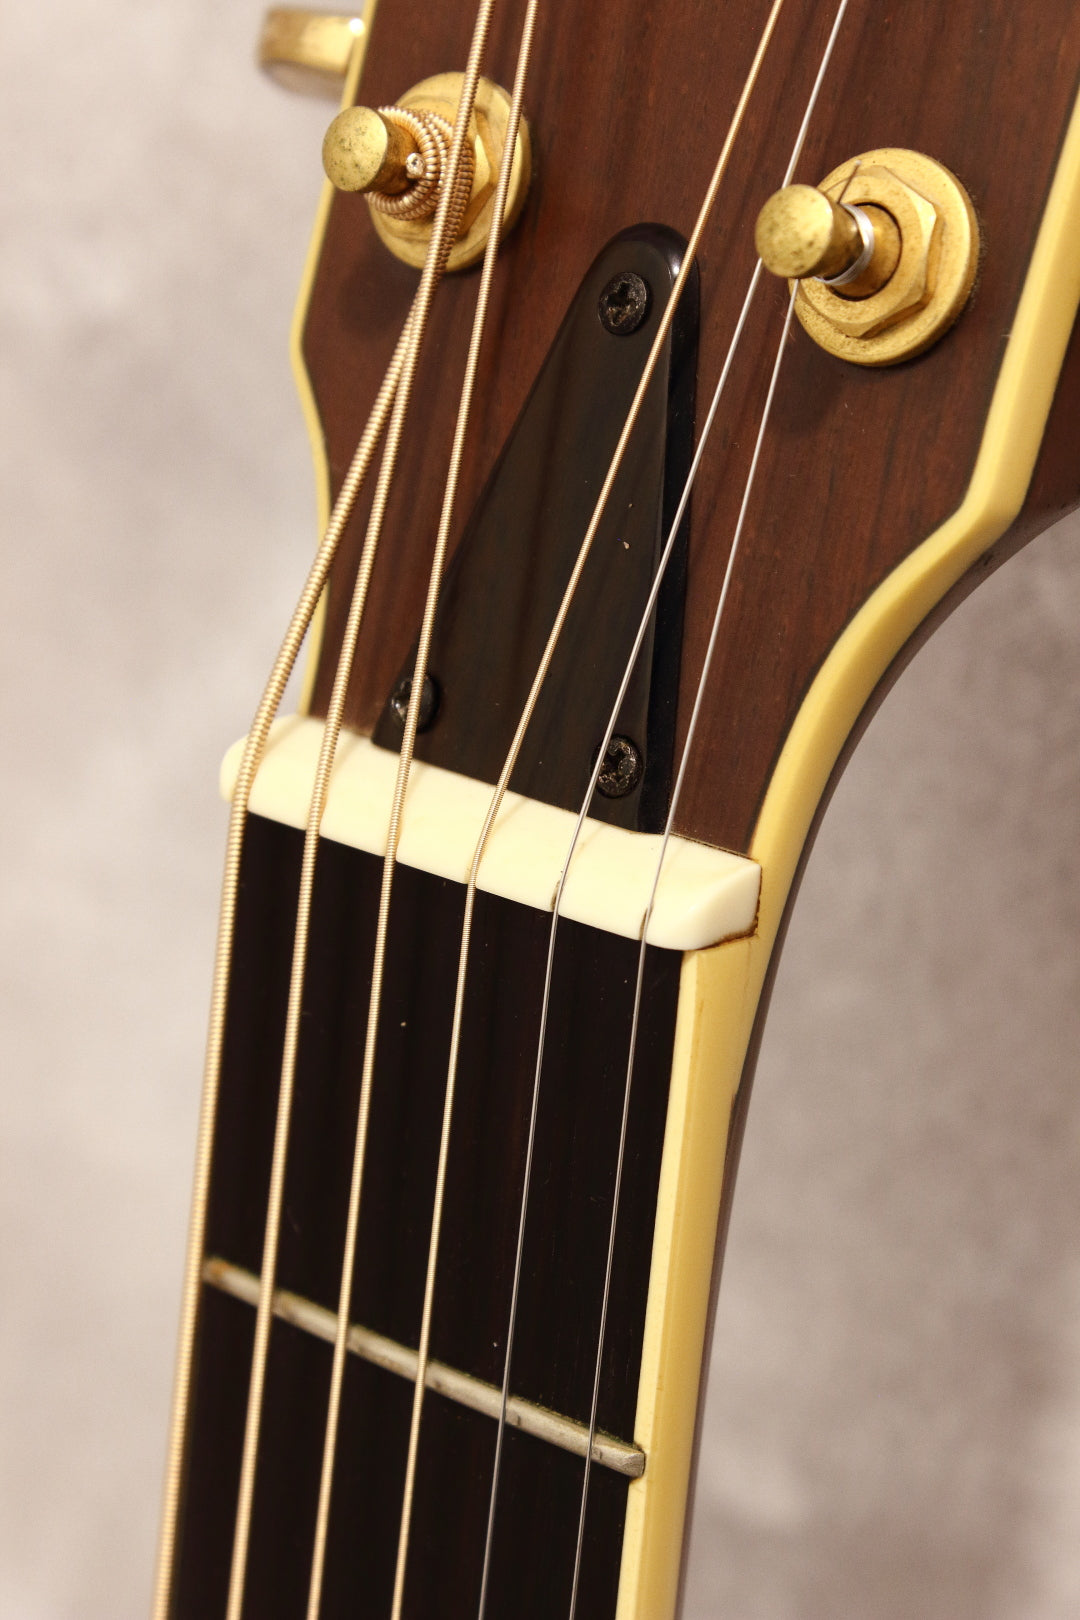 Yamaha LL-8RJ Jumbo Acoustic 1991